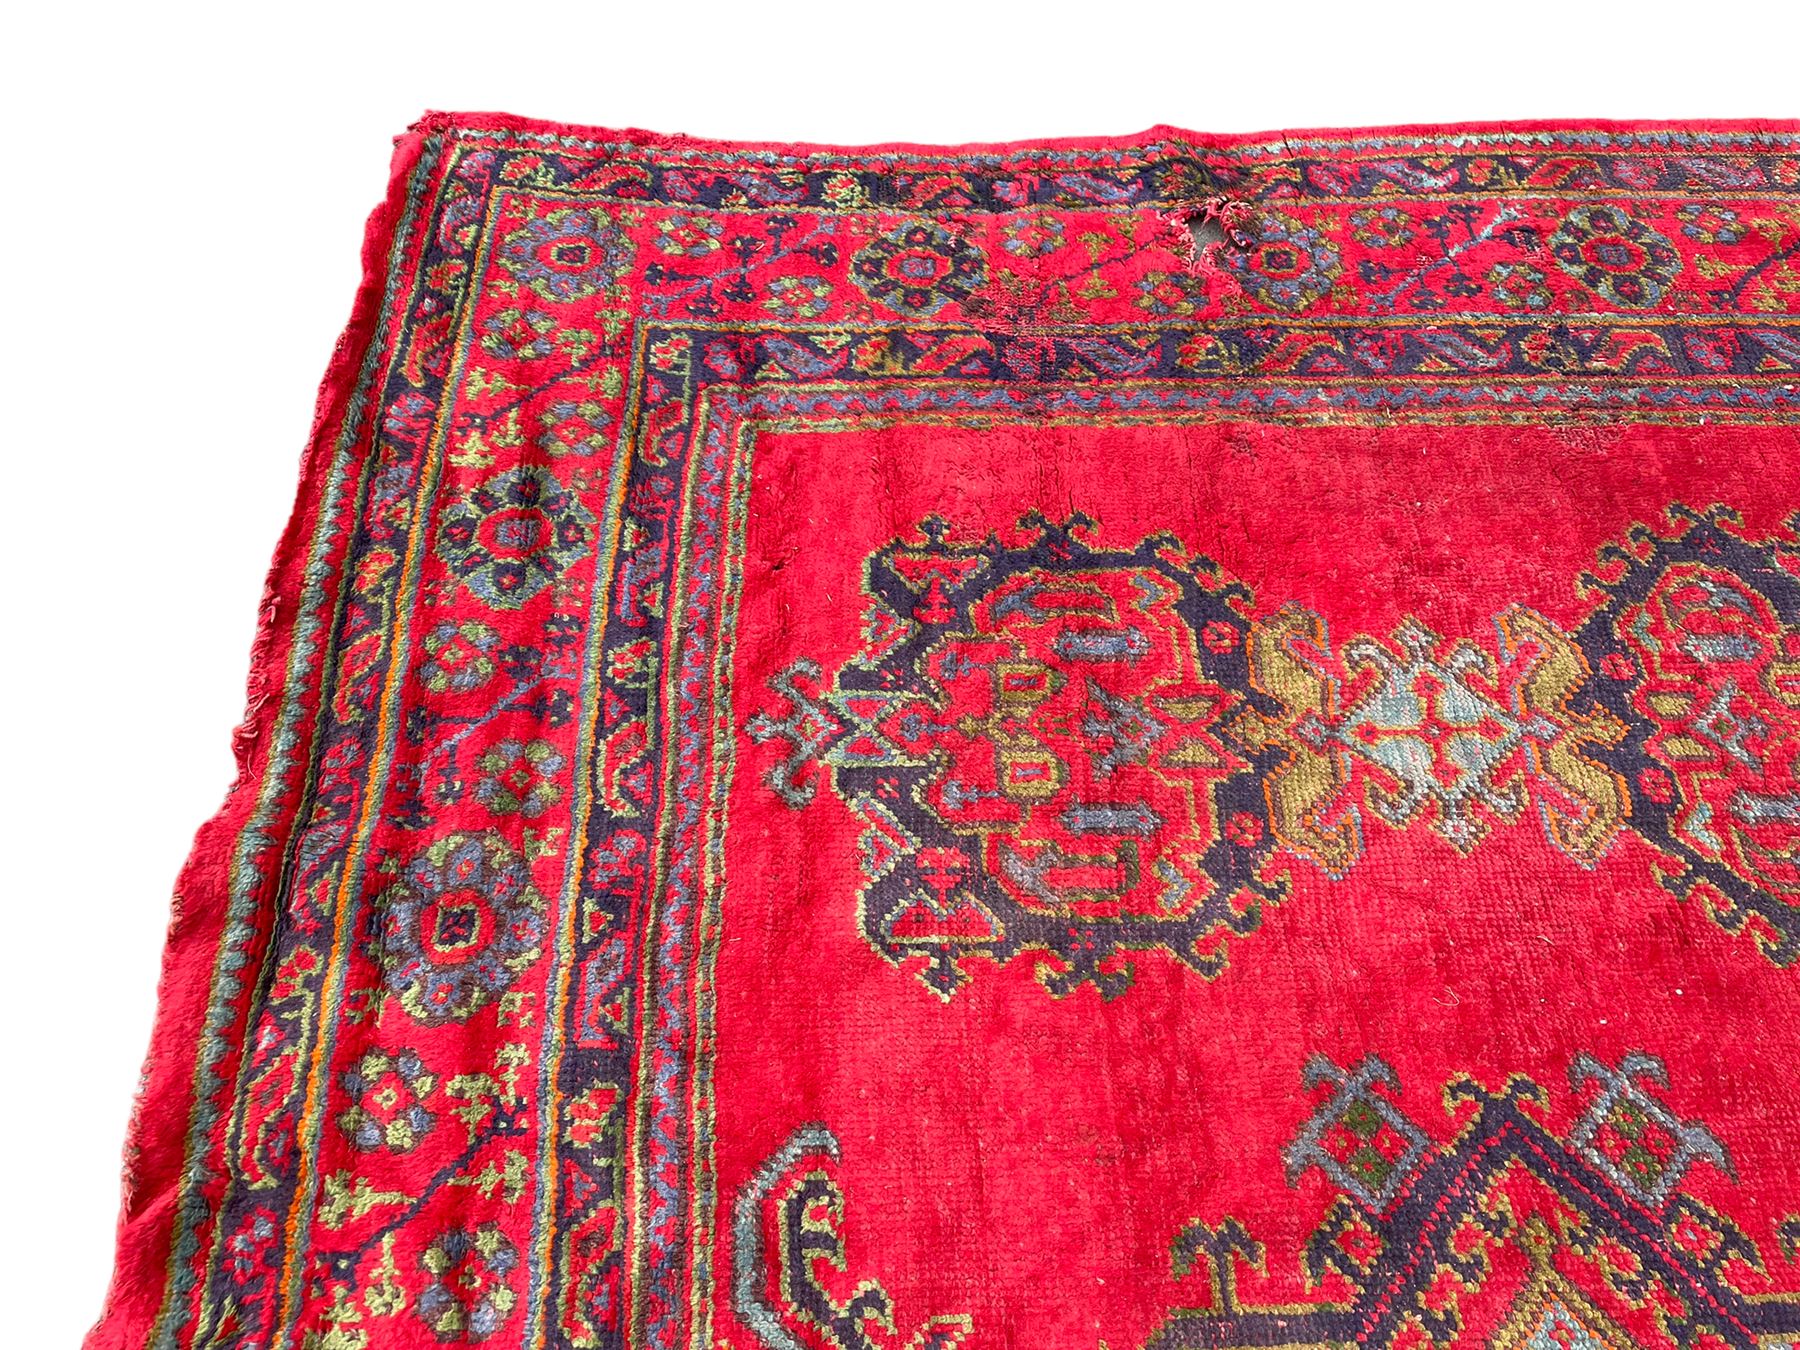 Early 20th century Western Anatolia Turkish Oushak crimson ground carpet - Image 6 of 10